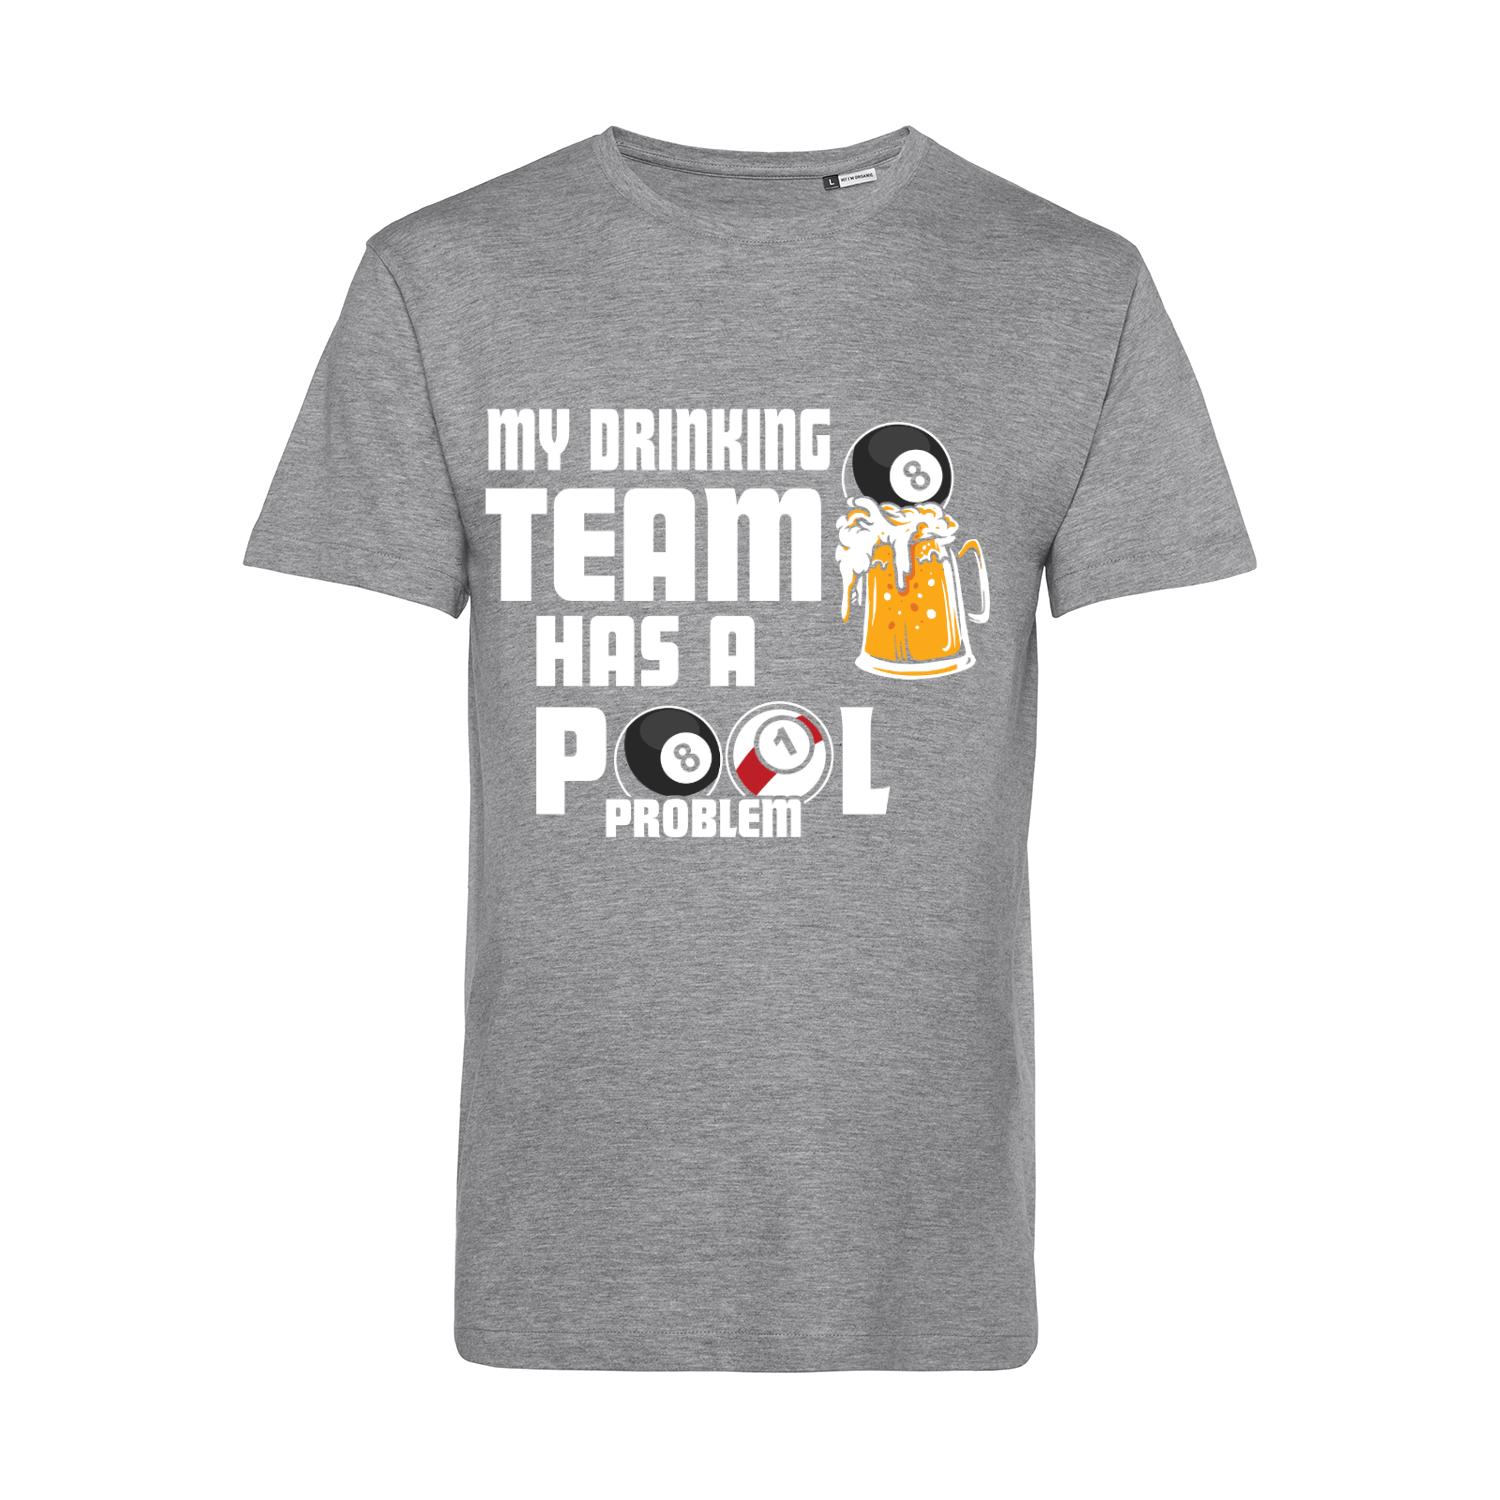 Nachhaltiges T-Shirt Herren Billard - My Drinking Team has a Pool Problem